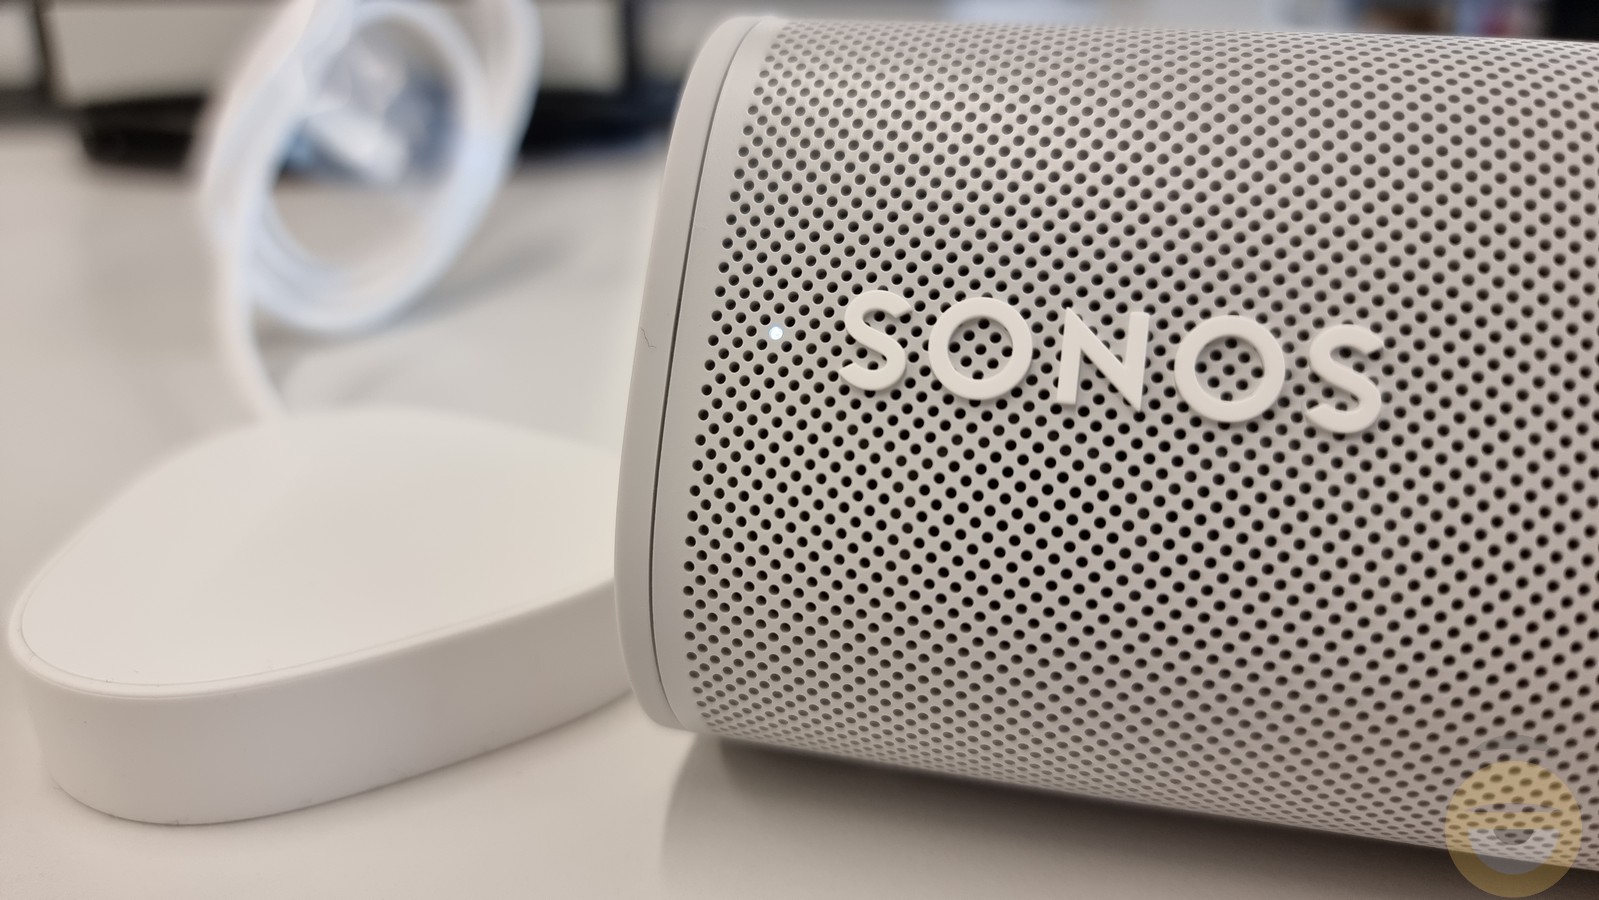 Η Google μηνύει τη Sonos για την τεχνολογία των έξυπνων ηχείων καθώς και του φωνητικού ελέγχου